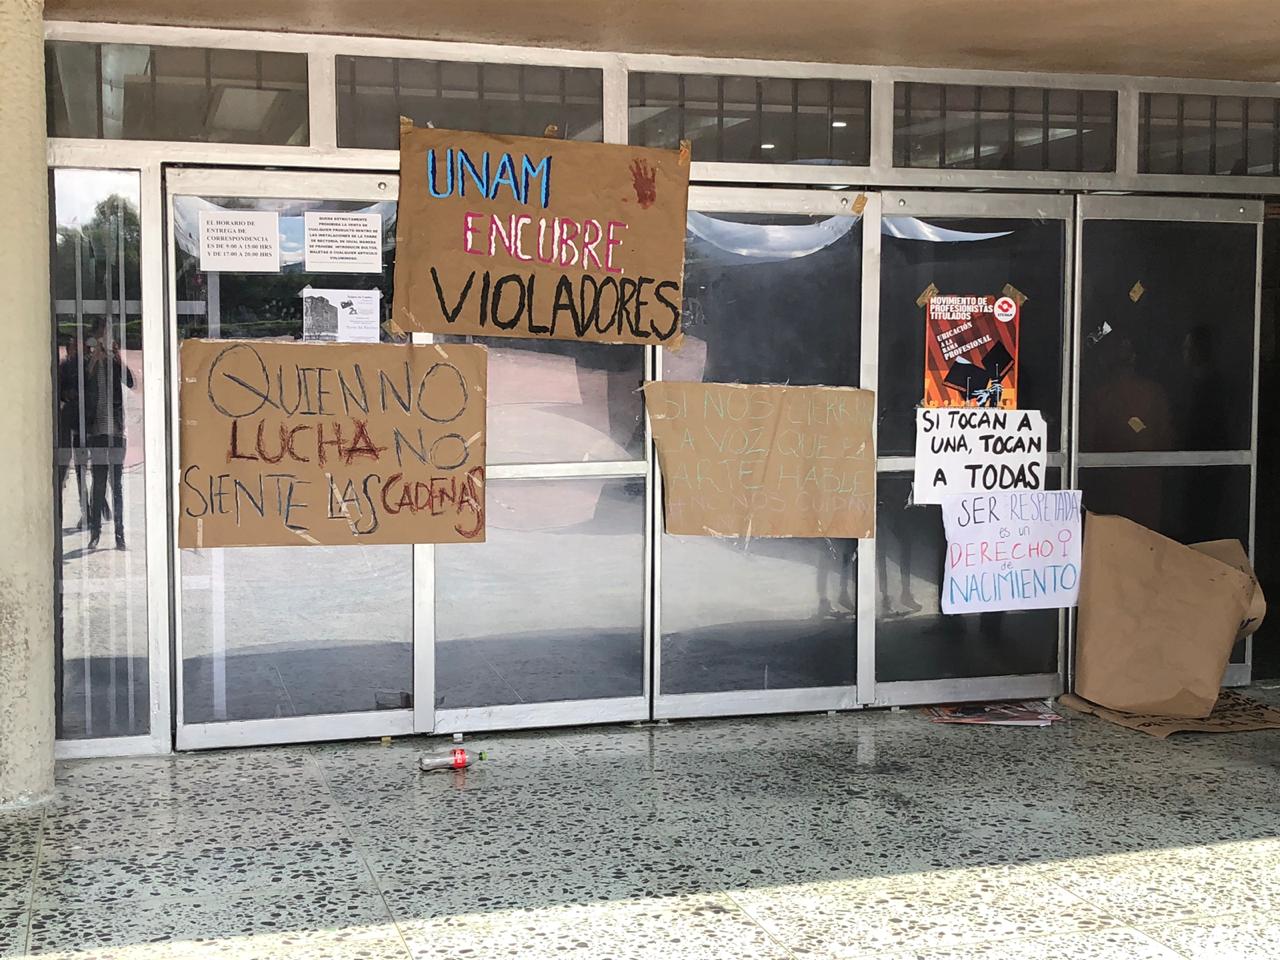 Marchan estudiantes de CCH Sur a rectoría por violación a estudiante